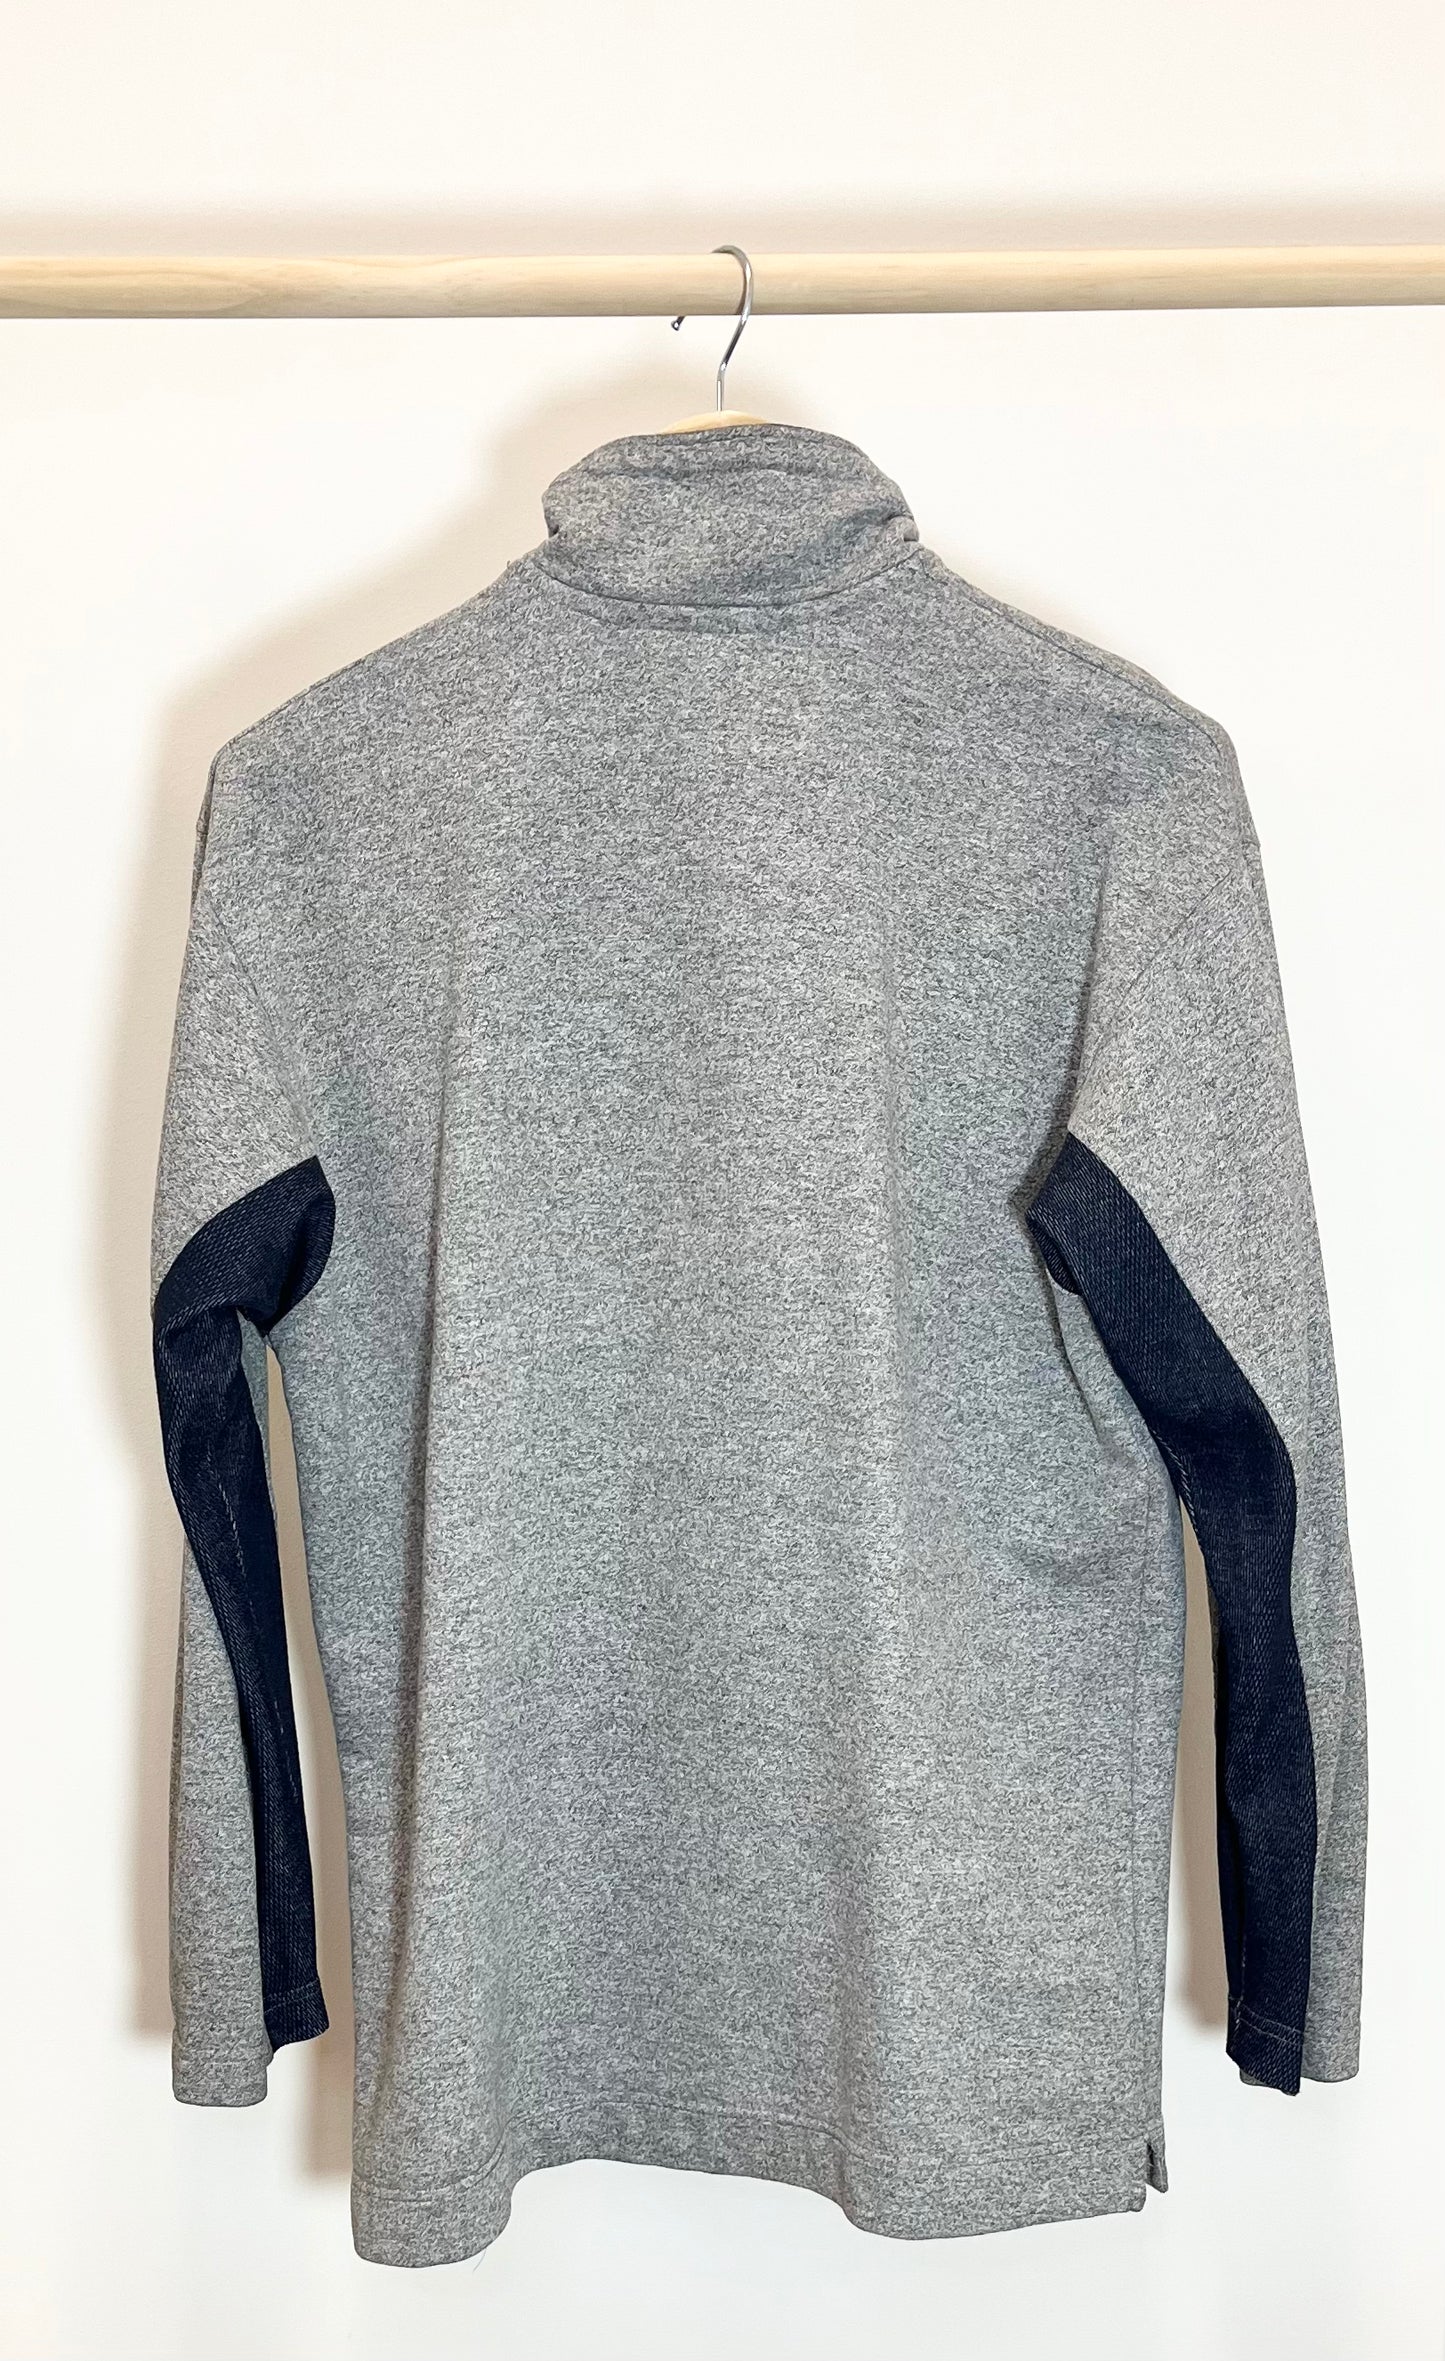 Asics -  Vintage Half Zip Sweatshirt